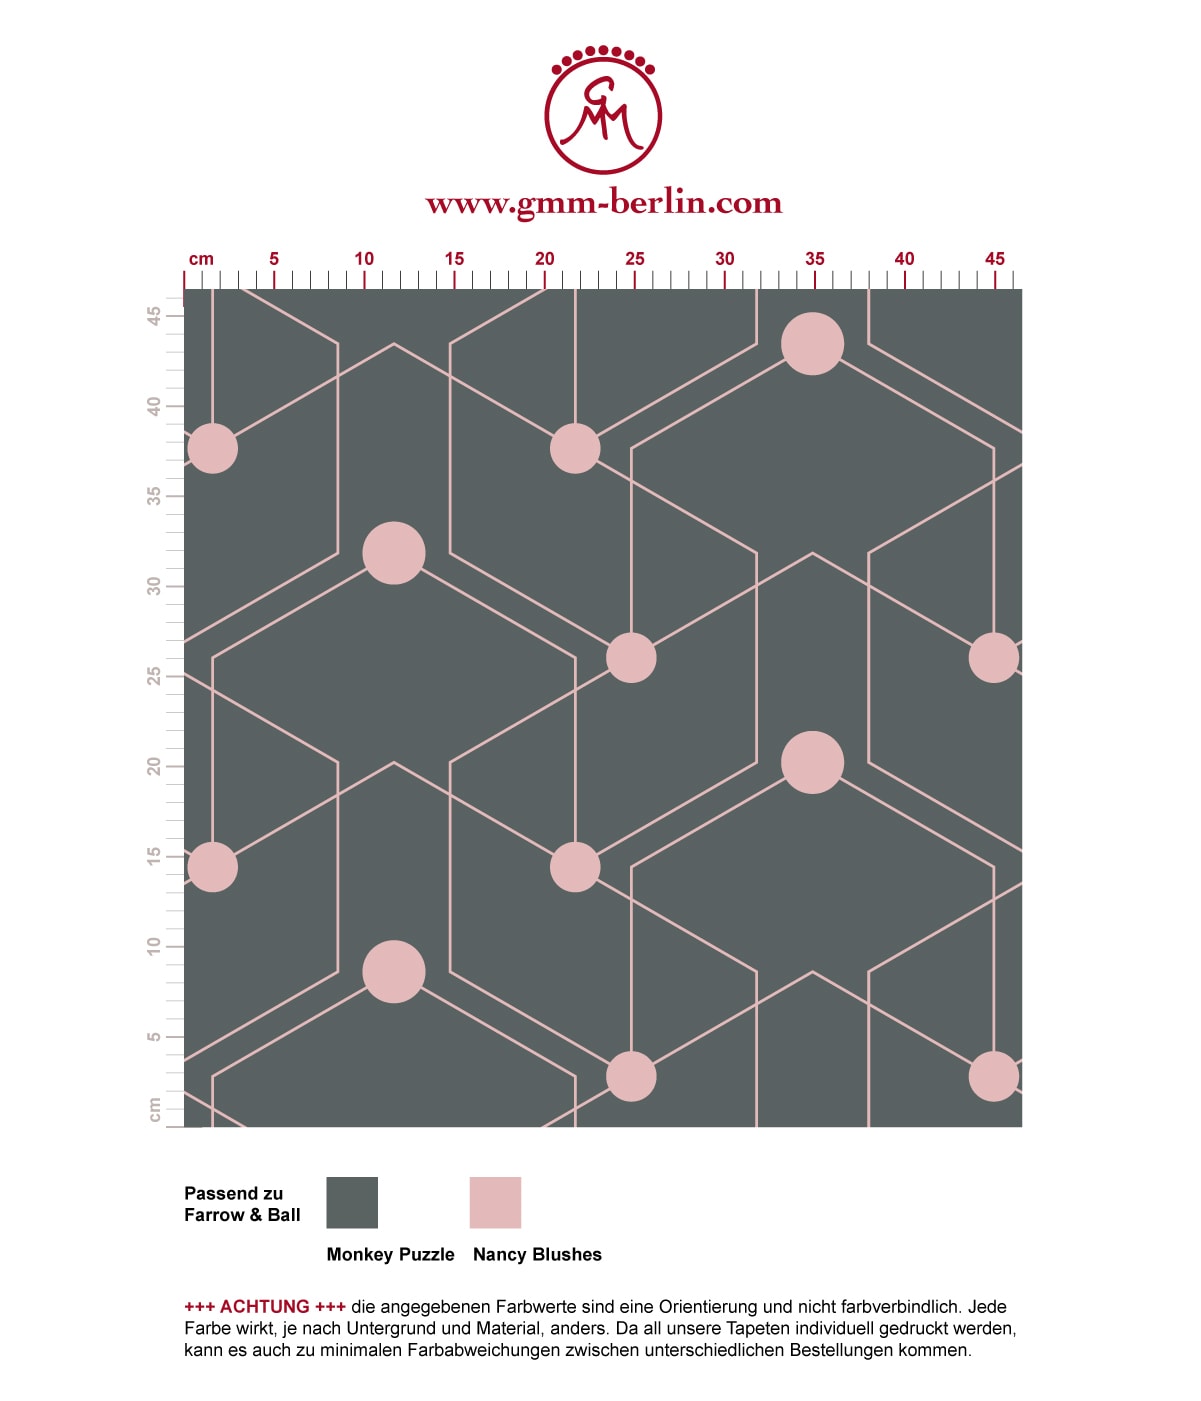 Schicke moderne grafische Tapete "Celestial Dots" großes Muster in grau rosa angepasst an Farrow & Ball Wandfarben. Aus dem GMM-BERLIN.com Sortiment: Schöne Tapeten in der Farbe: rosa